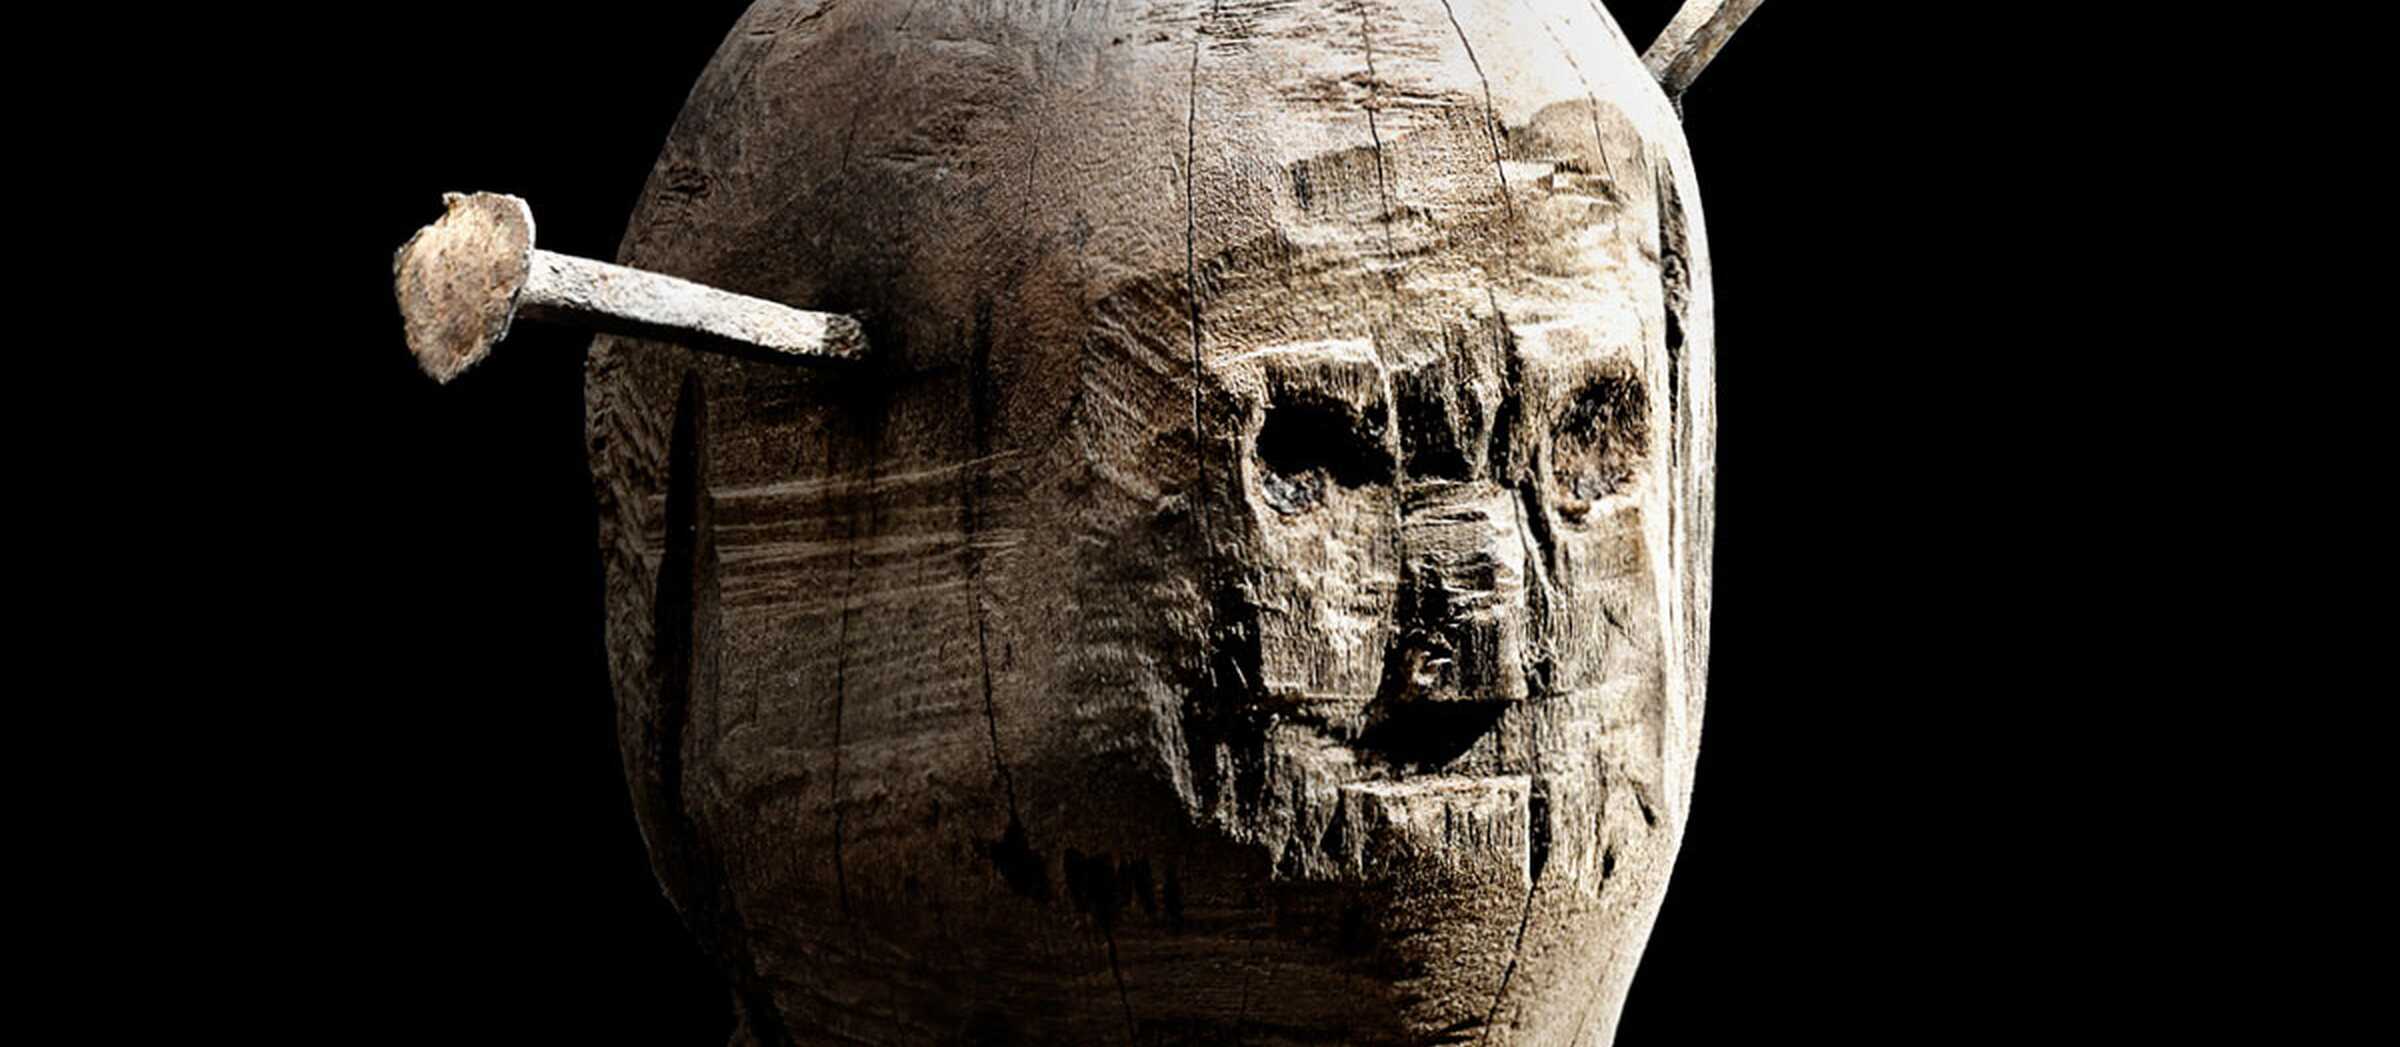 Darstellung einer sogenannten Nagelpuppe, einer Holzfigur in Form eines Menschen mit angedeutetem Gesicht und Eisennägeln, die in den "Kopf" gehämmert wurden.